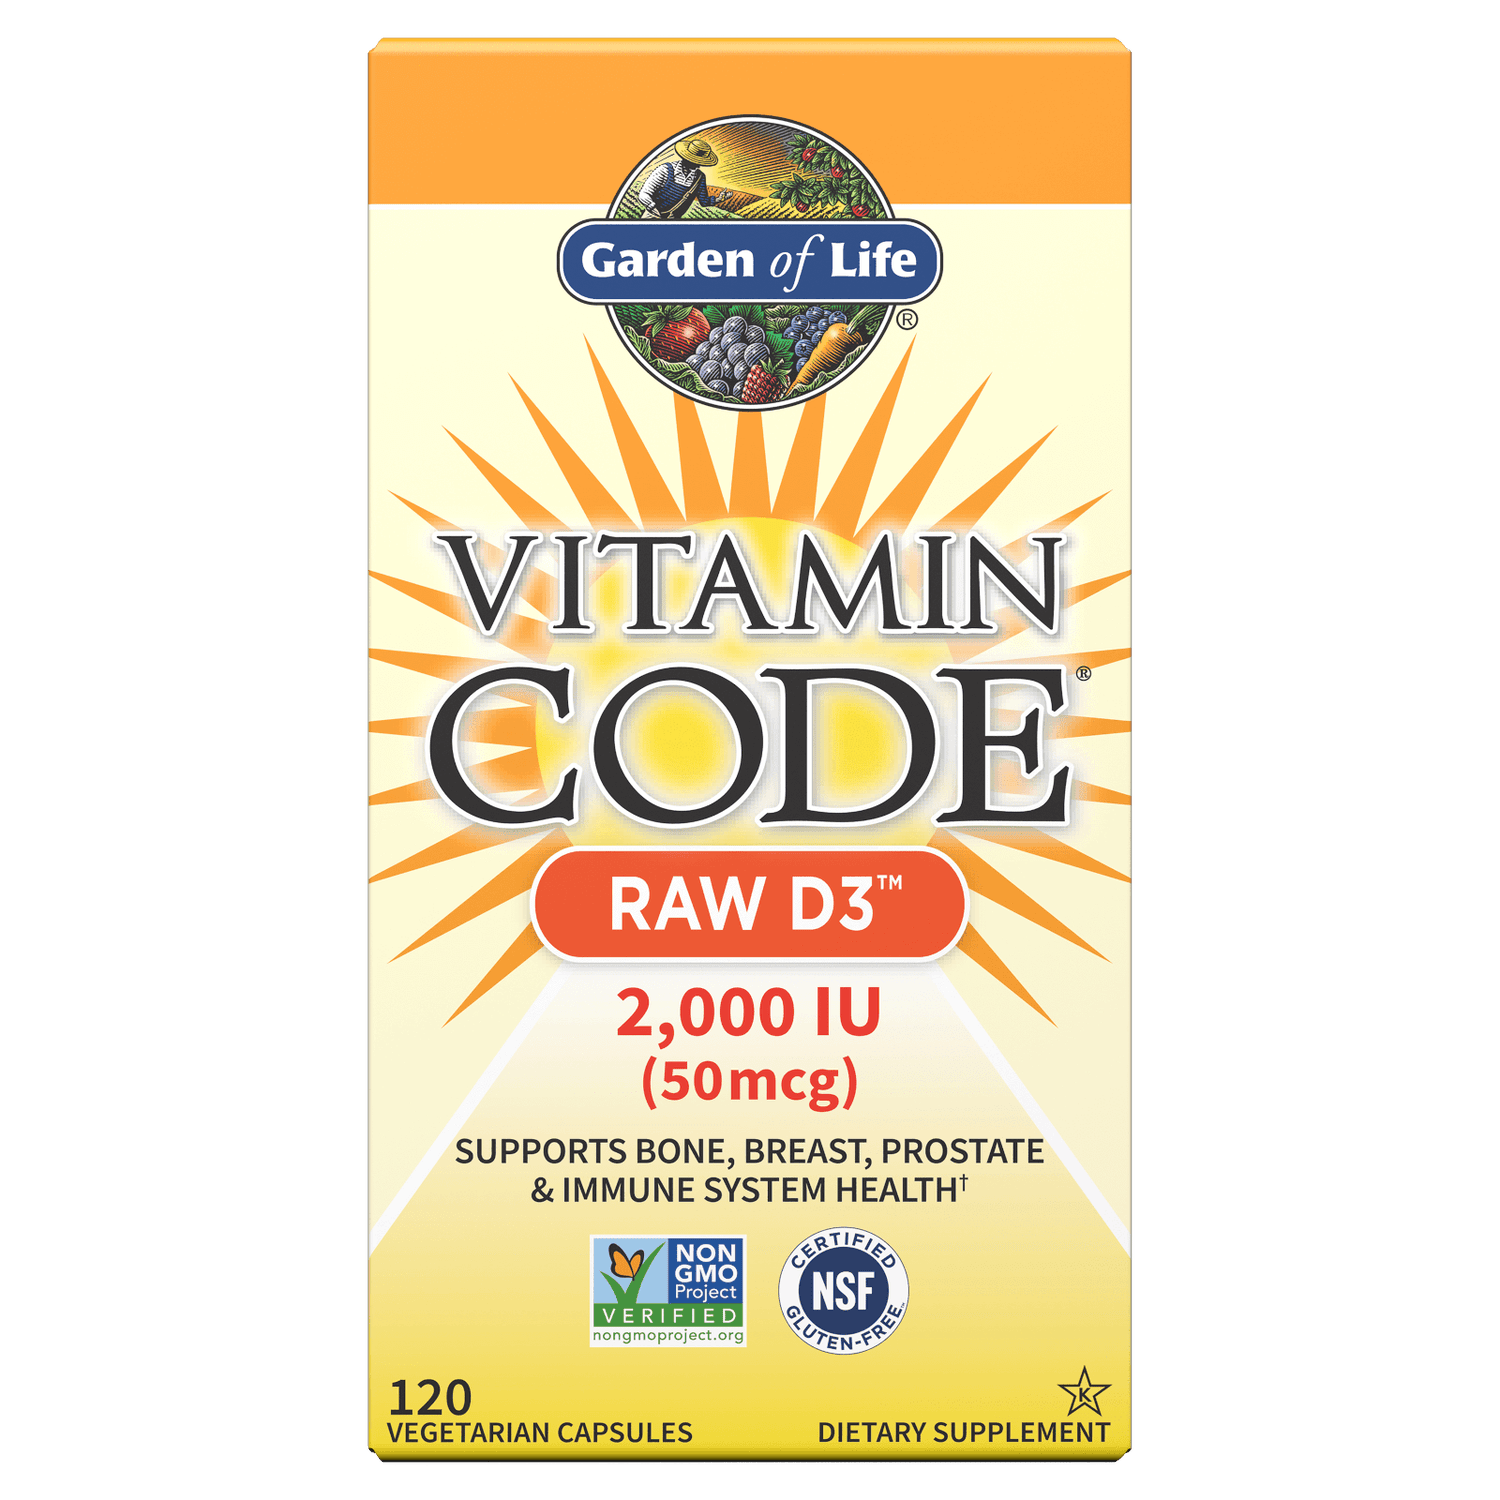 Vitamine Code Raw D3 2000 LU 120 capsules